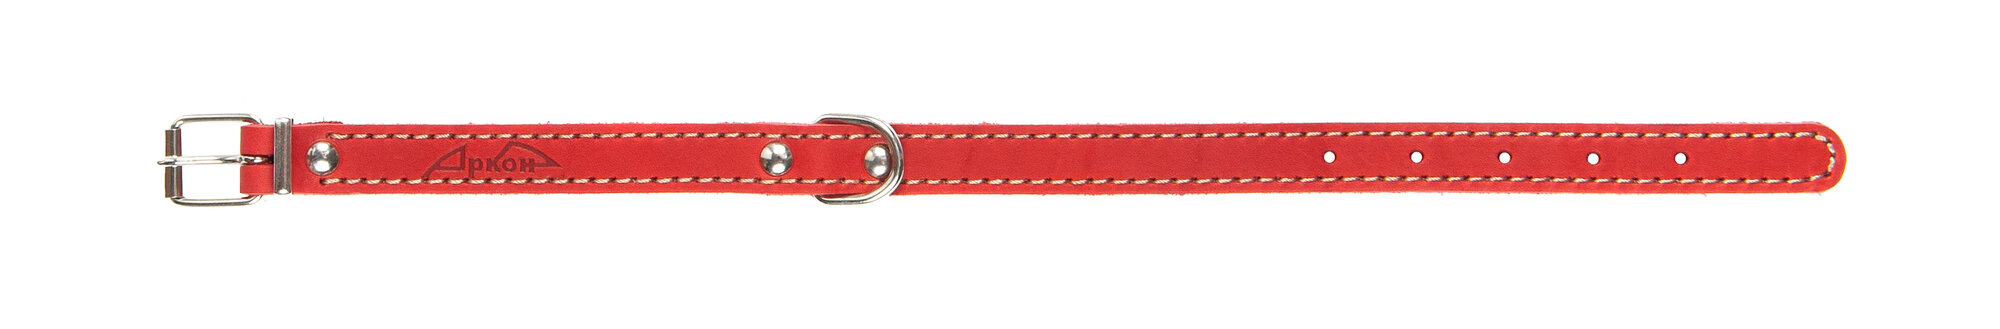 Ошейник аркон кожаный для собак однослойный, однослойный, декоративная строчка, красный (26-34 см/16 мм)